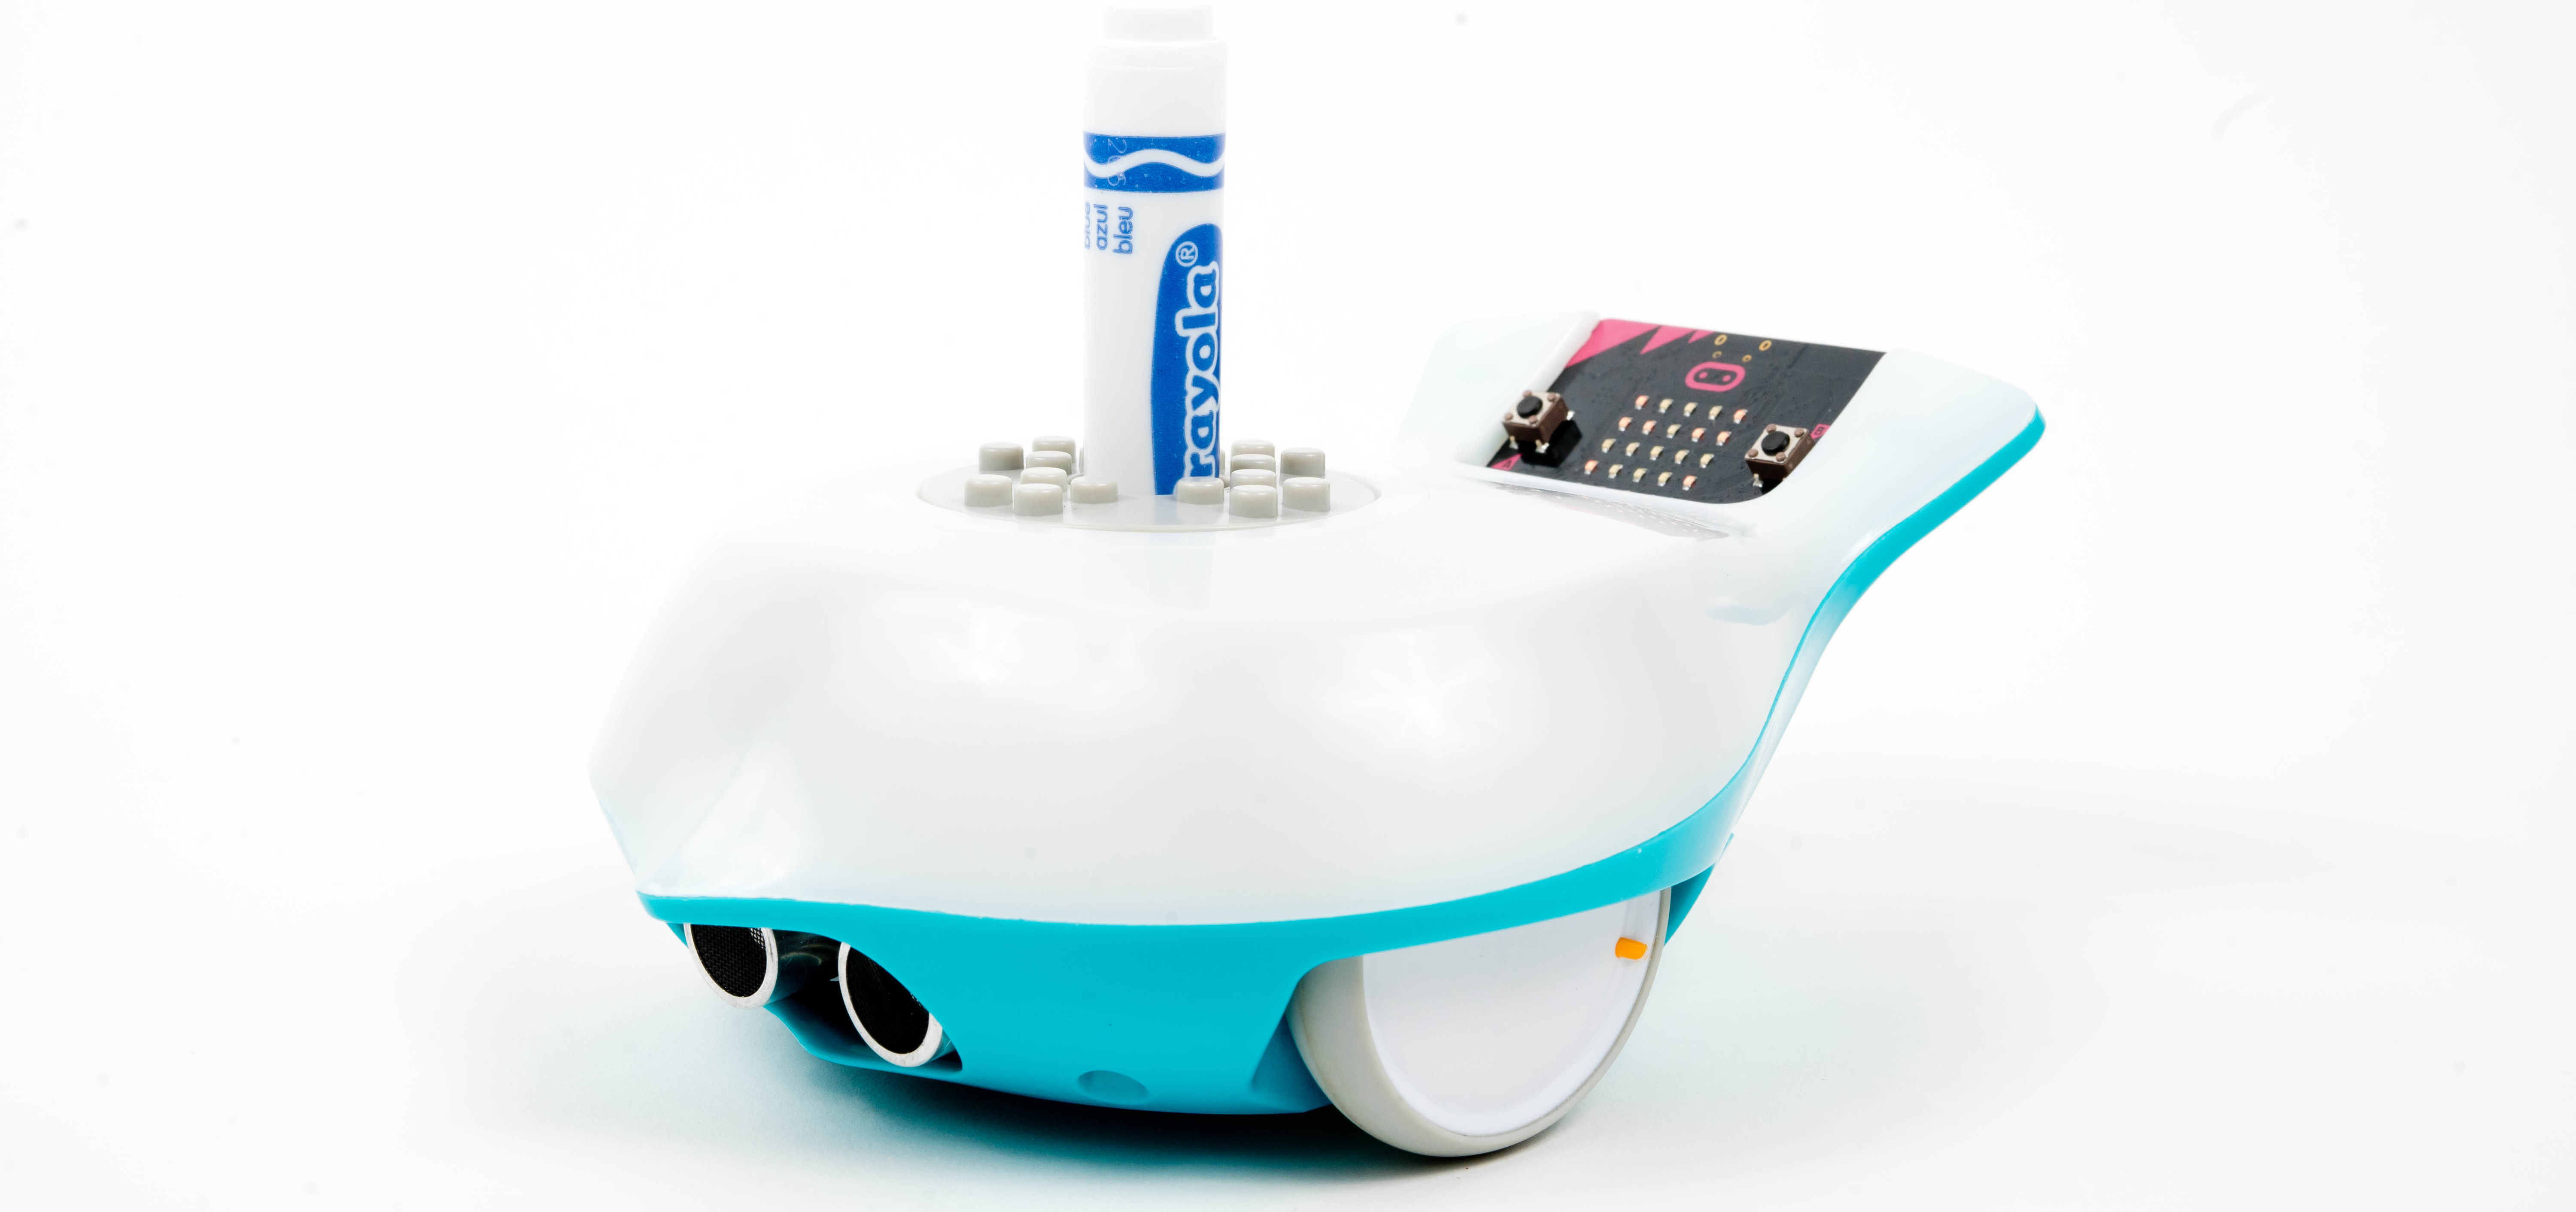 Finch Robot 2.0 mit micro:bit - Zum Vergrößern klicken